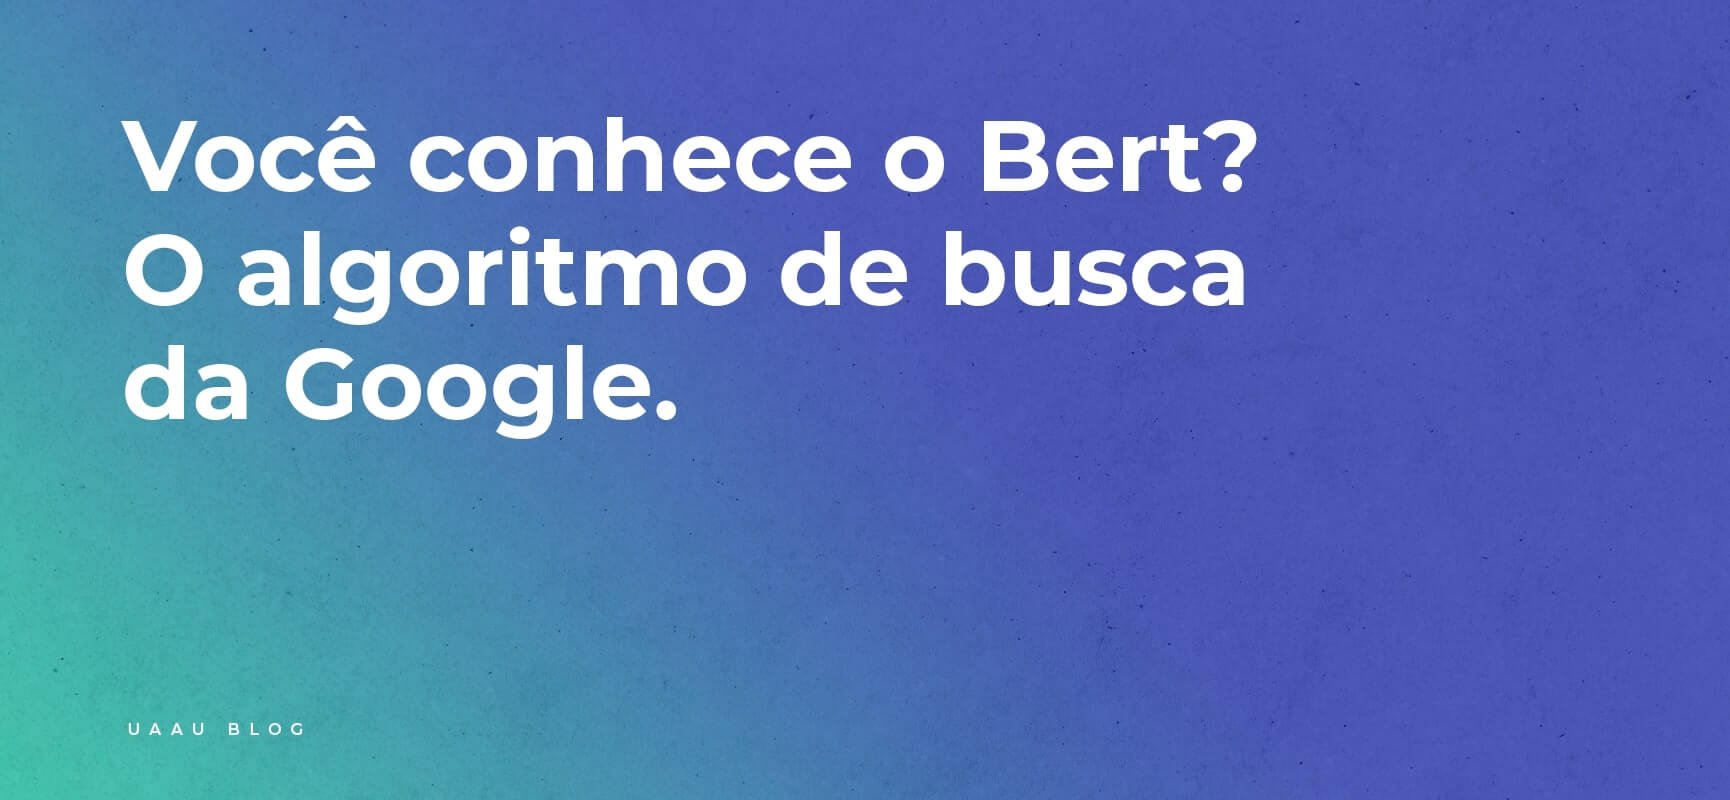 Você conhece o BERT? O algoritmo de busca da Google